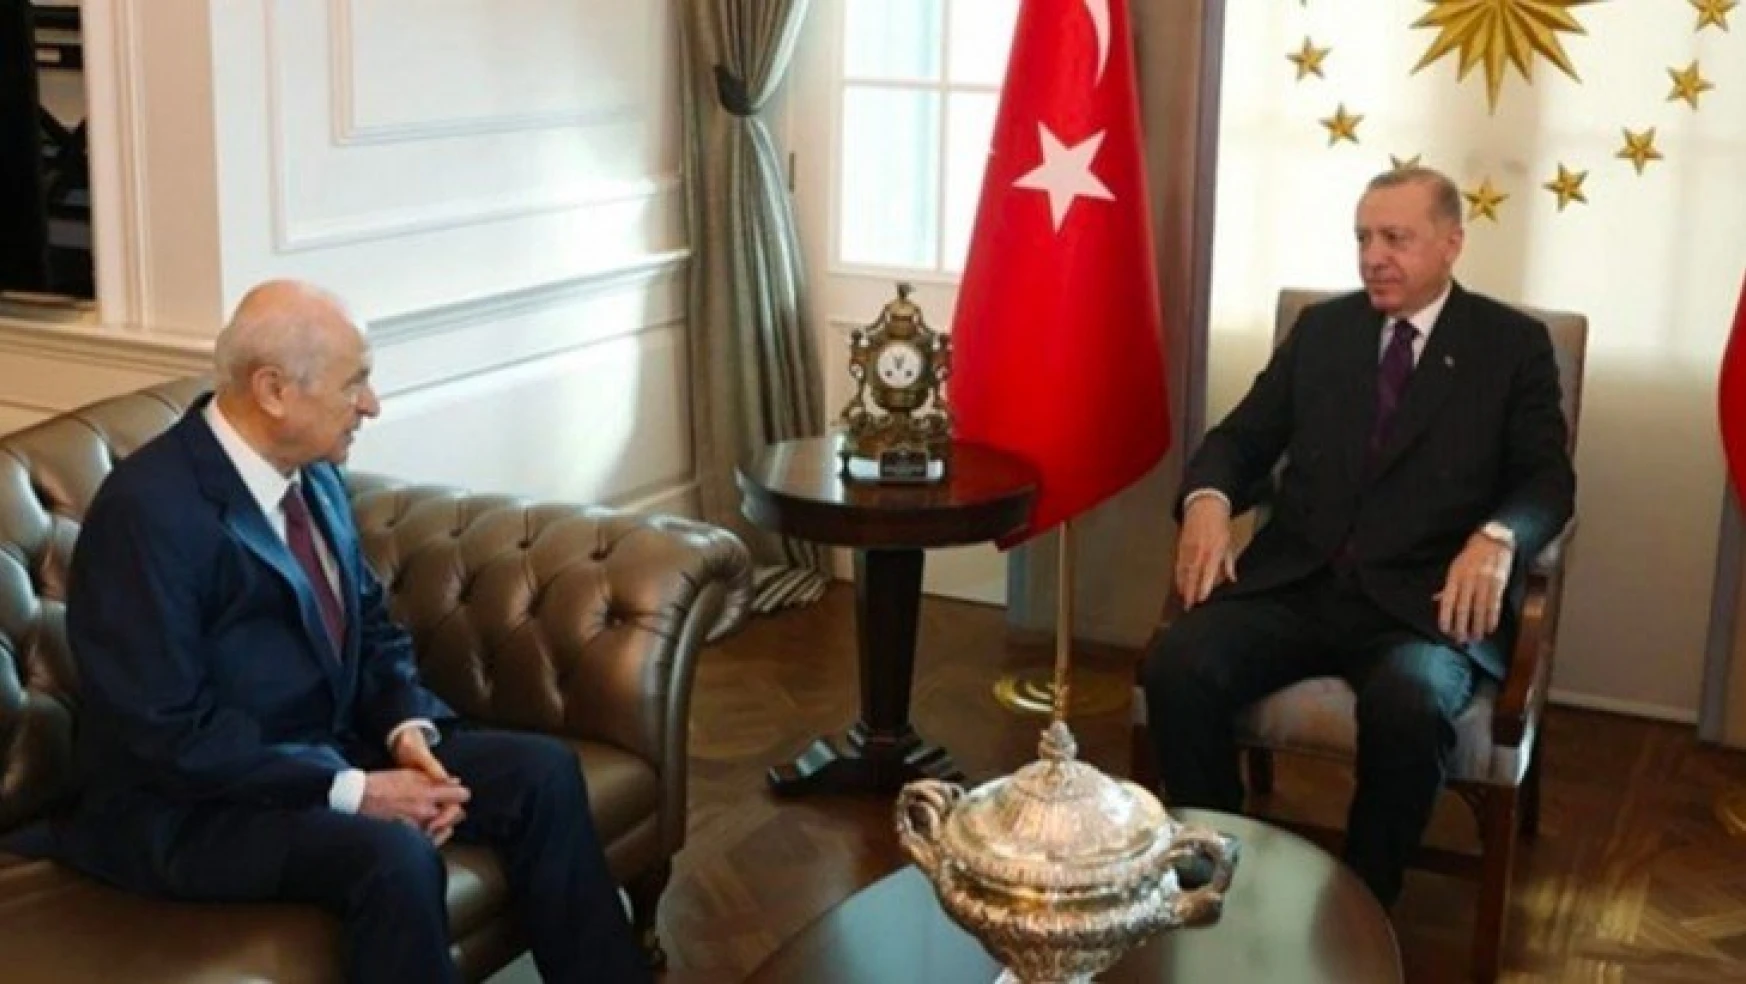 Erdoğan ile Bahçeli'den sürpriz görüşme